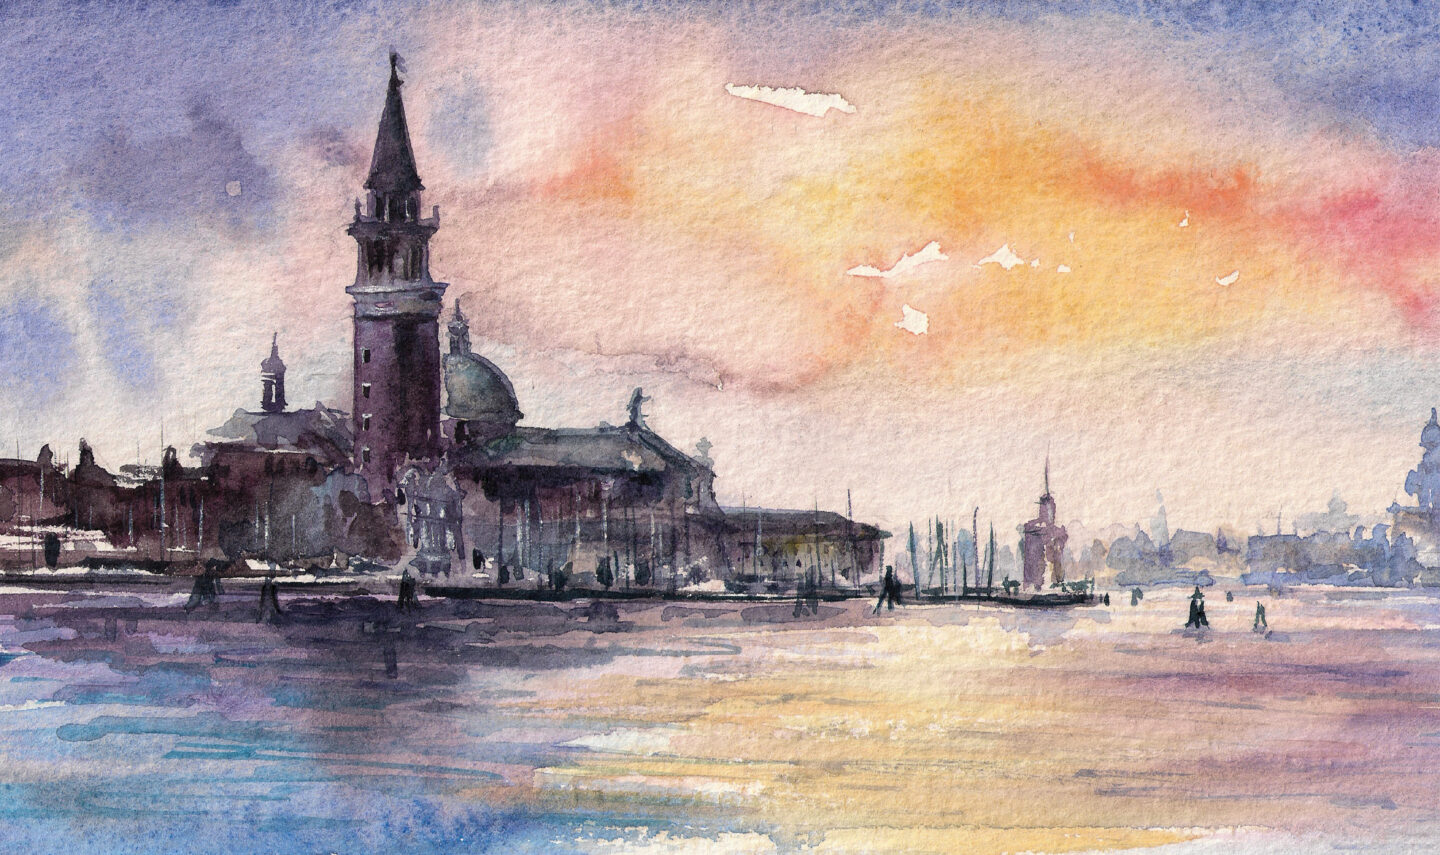 Venice Image 2